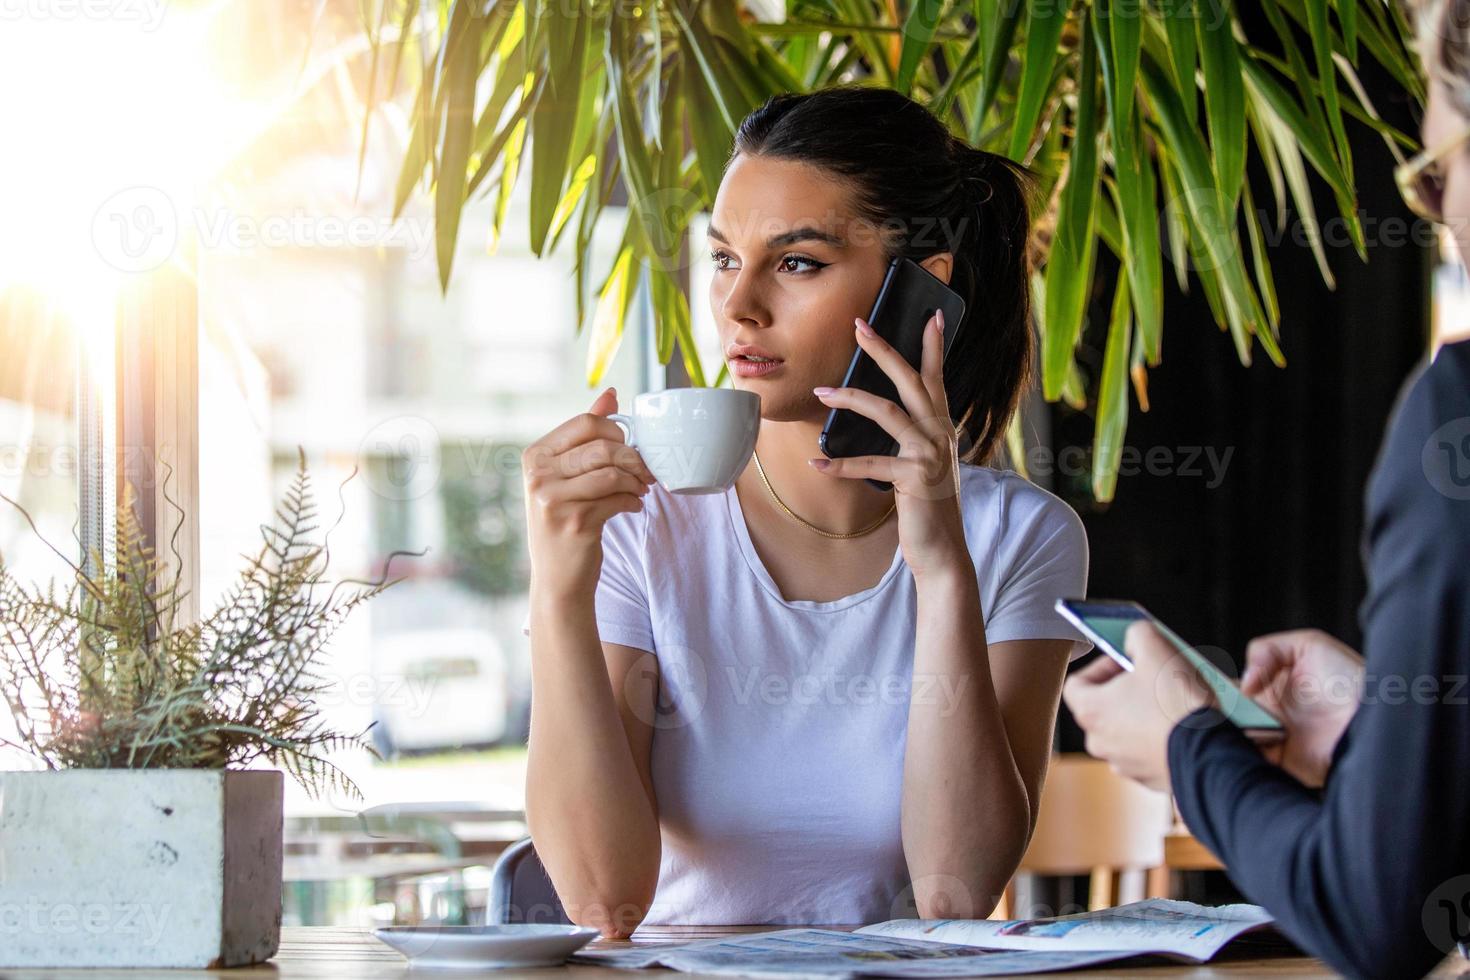 jong charmant vrouw roeping met cel telefoon terwijl zittend in koffie winkel gedurende vrij tijd, aantrekkelijk vrouw met schattig glimlach hebben pratend gesprek met mobiel telefoon terwijl rust uit in cafe foto